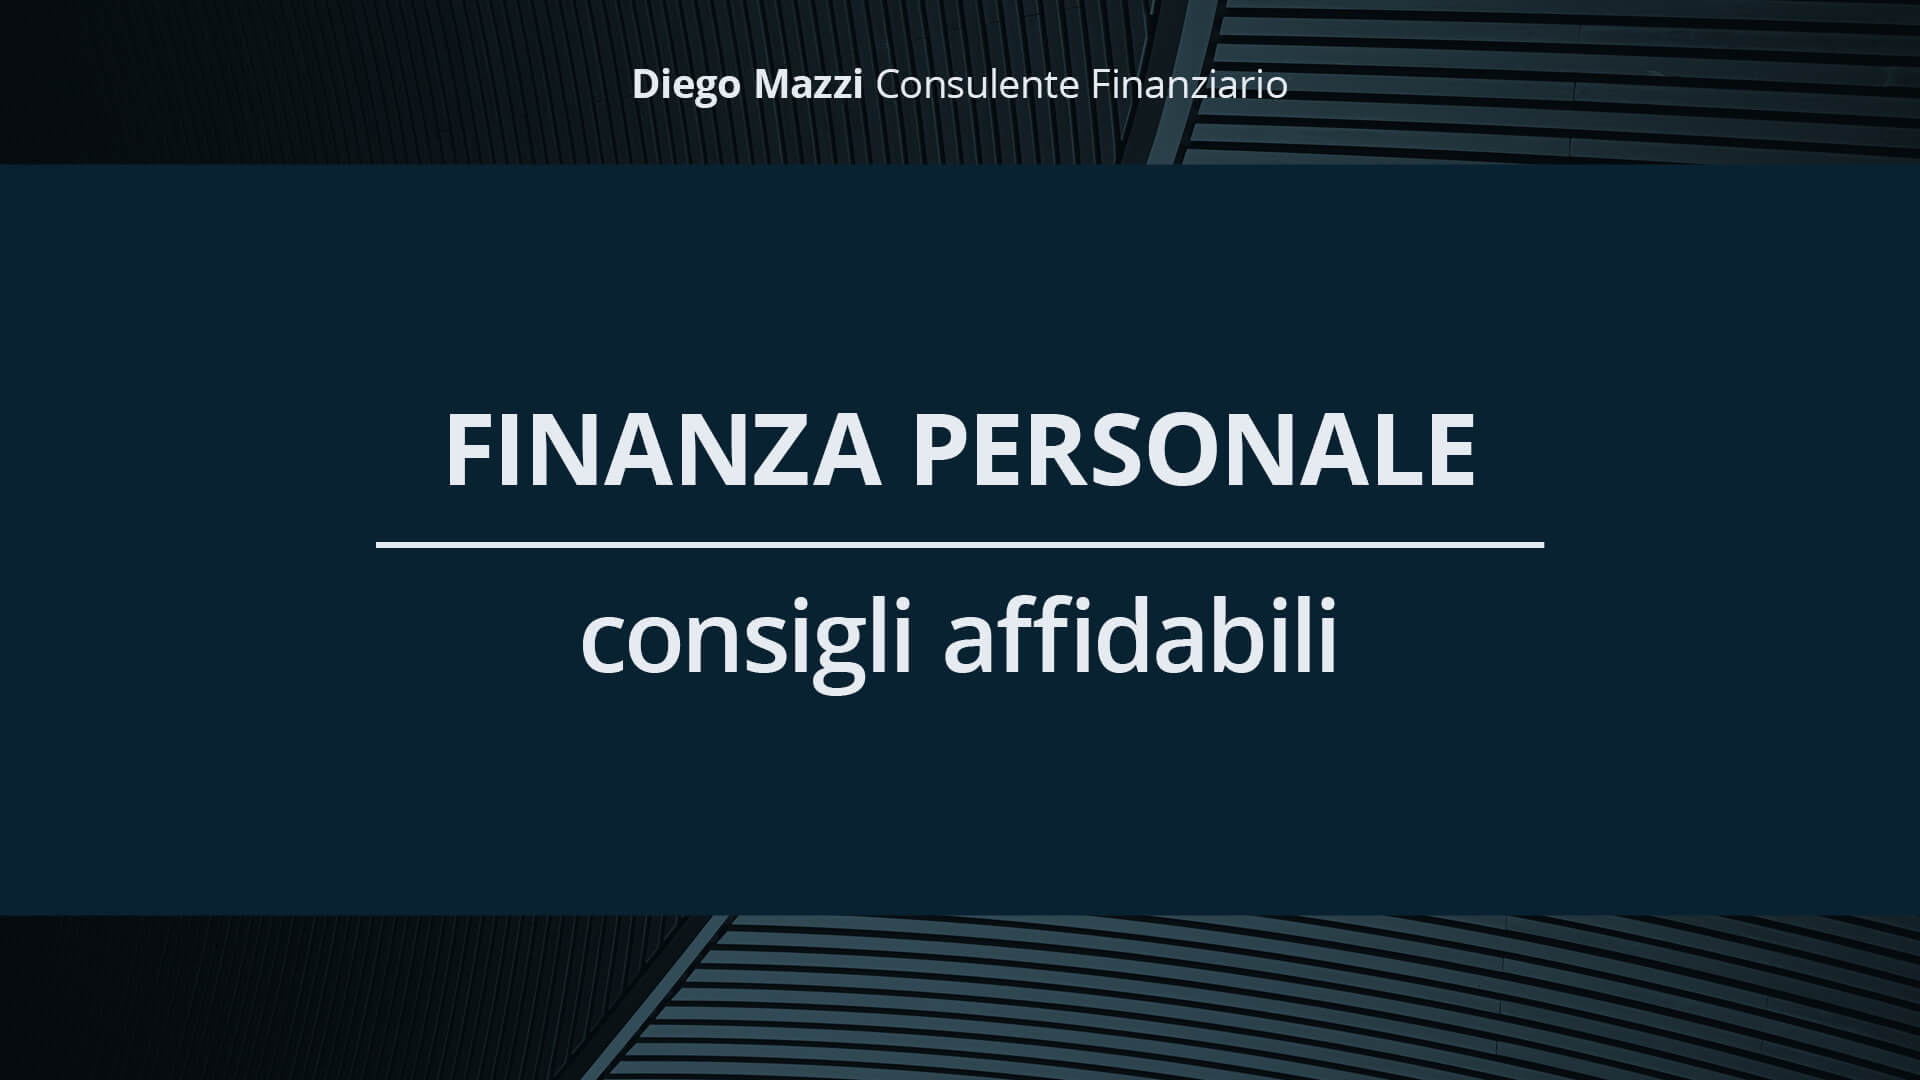 Finanza personale: quali sono i consigli affidabili? - Diego Mazzi